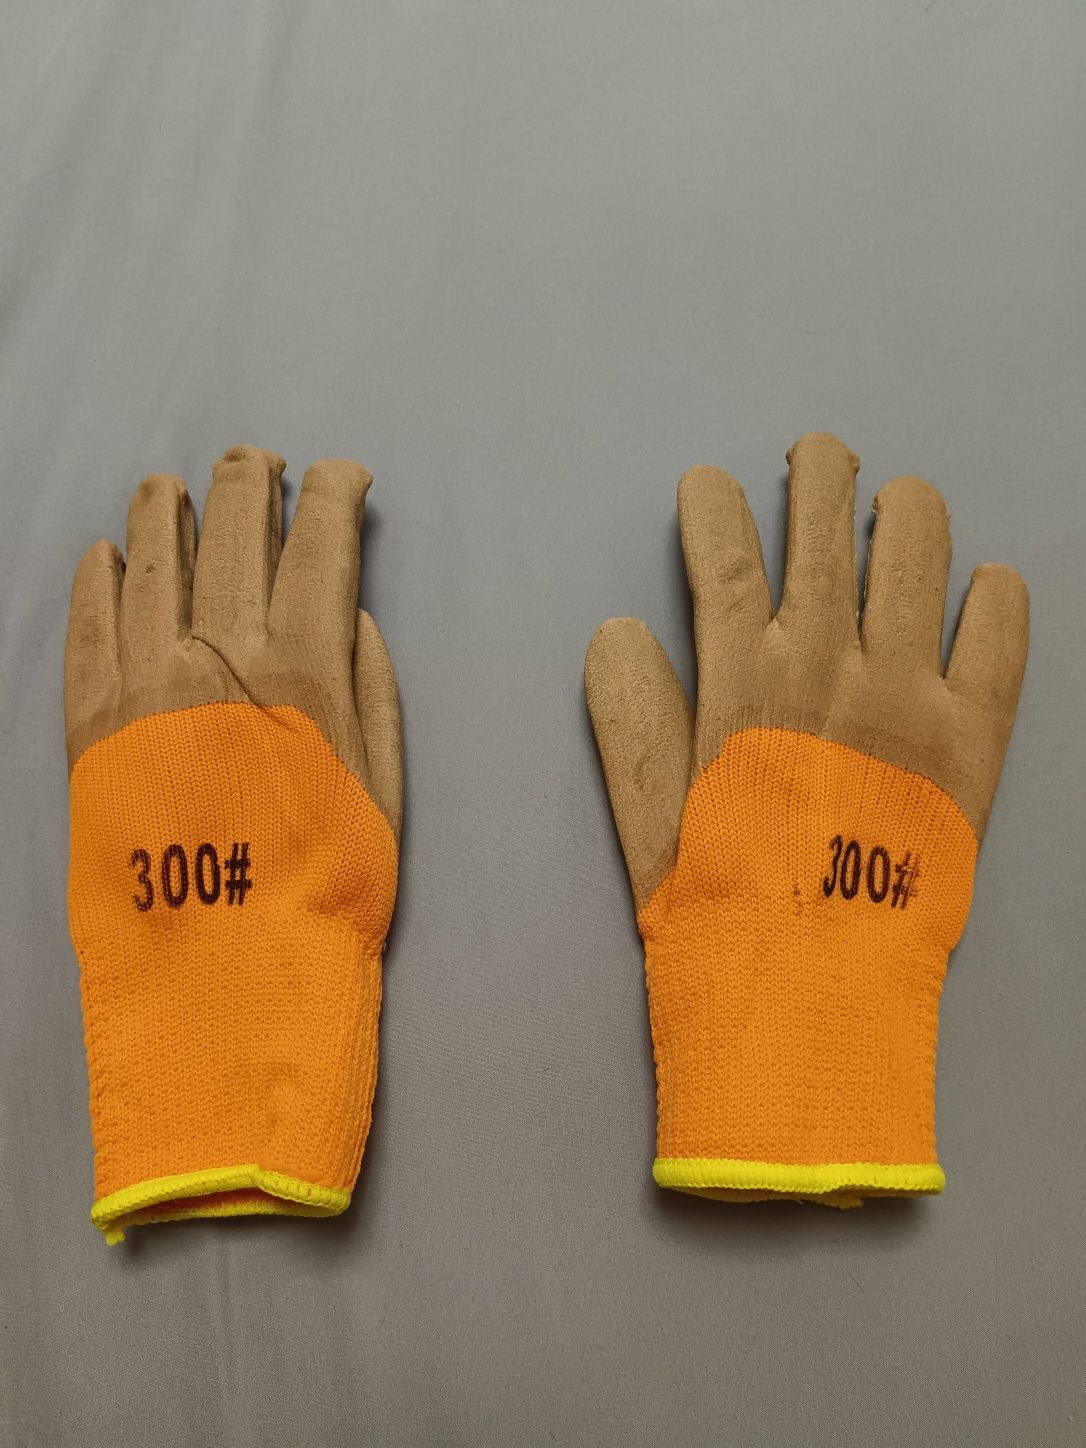 Оптом перчатки рабочие  #300, лепесток - респиратор ШБ - Л-200